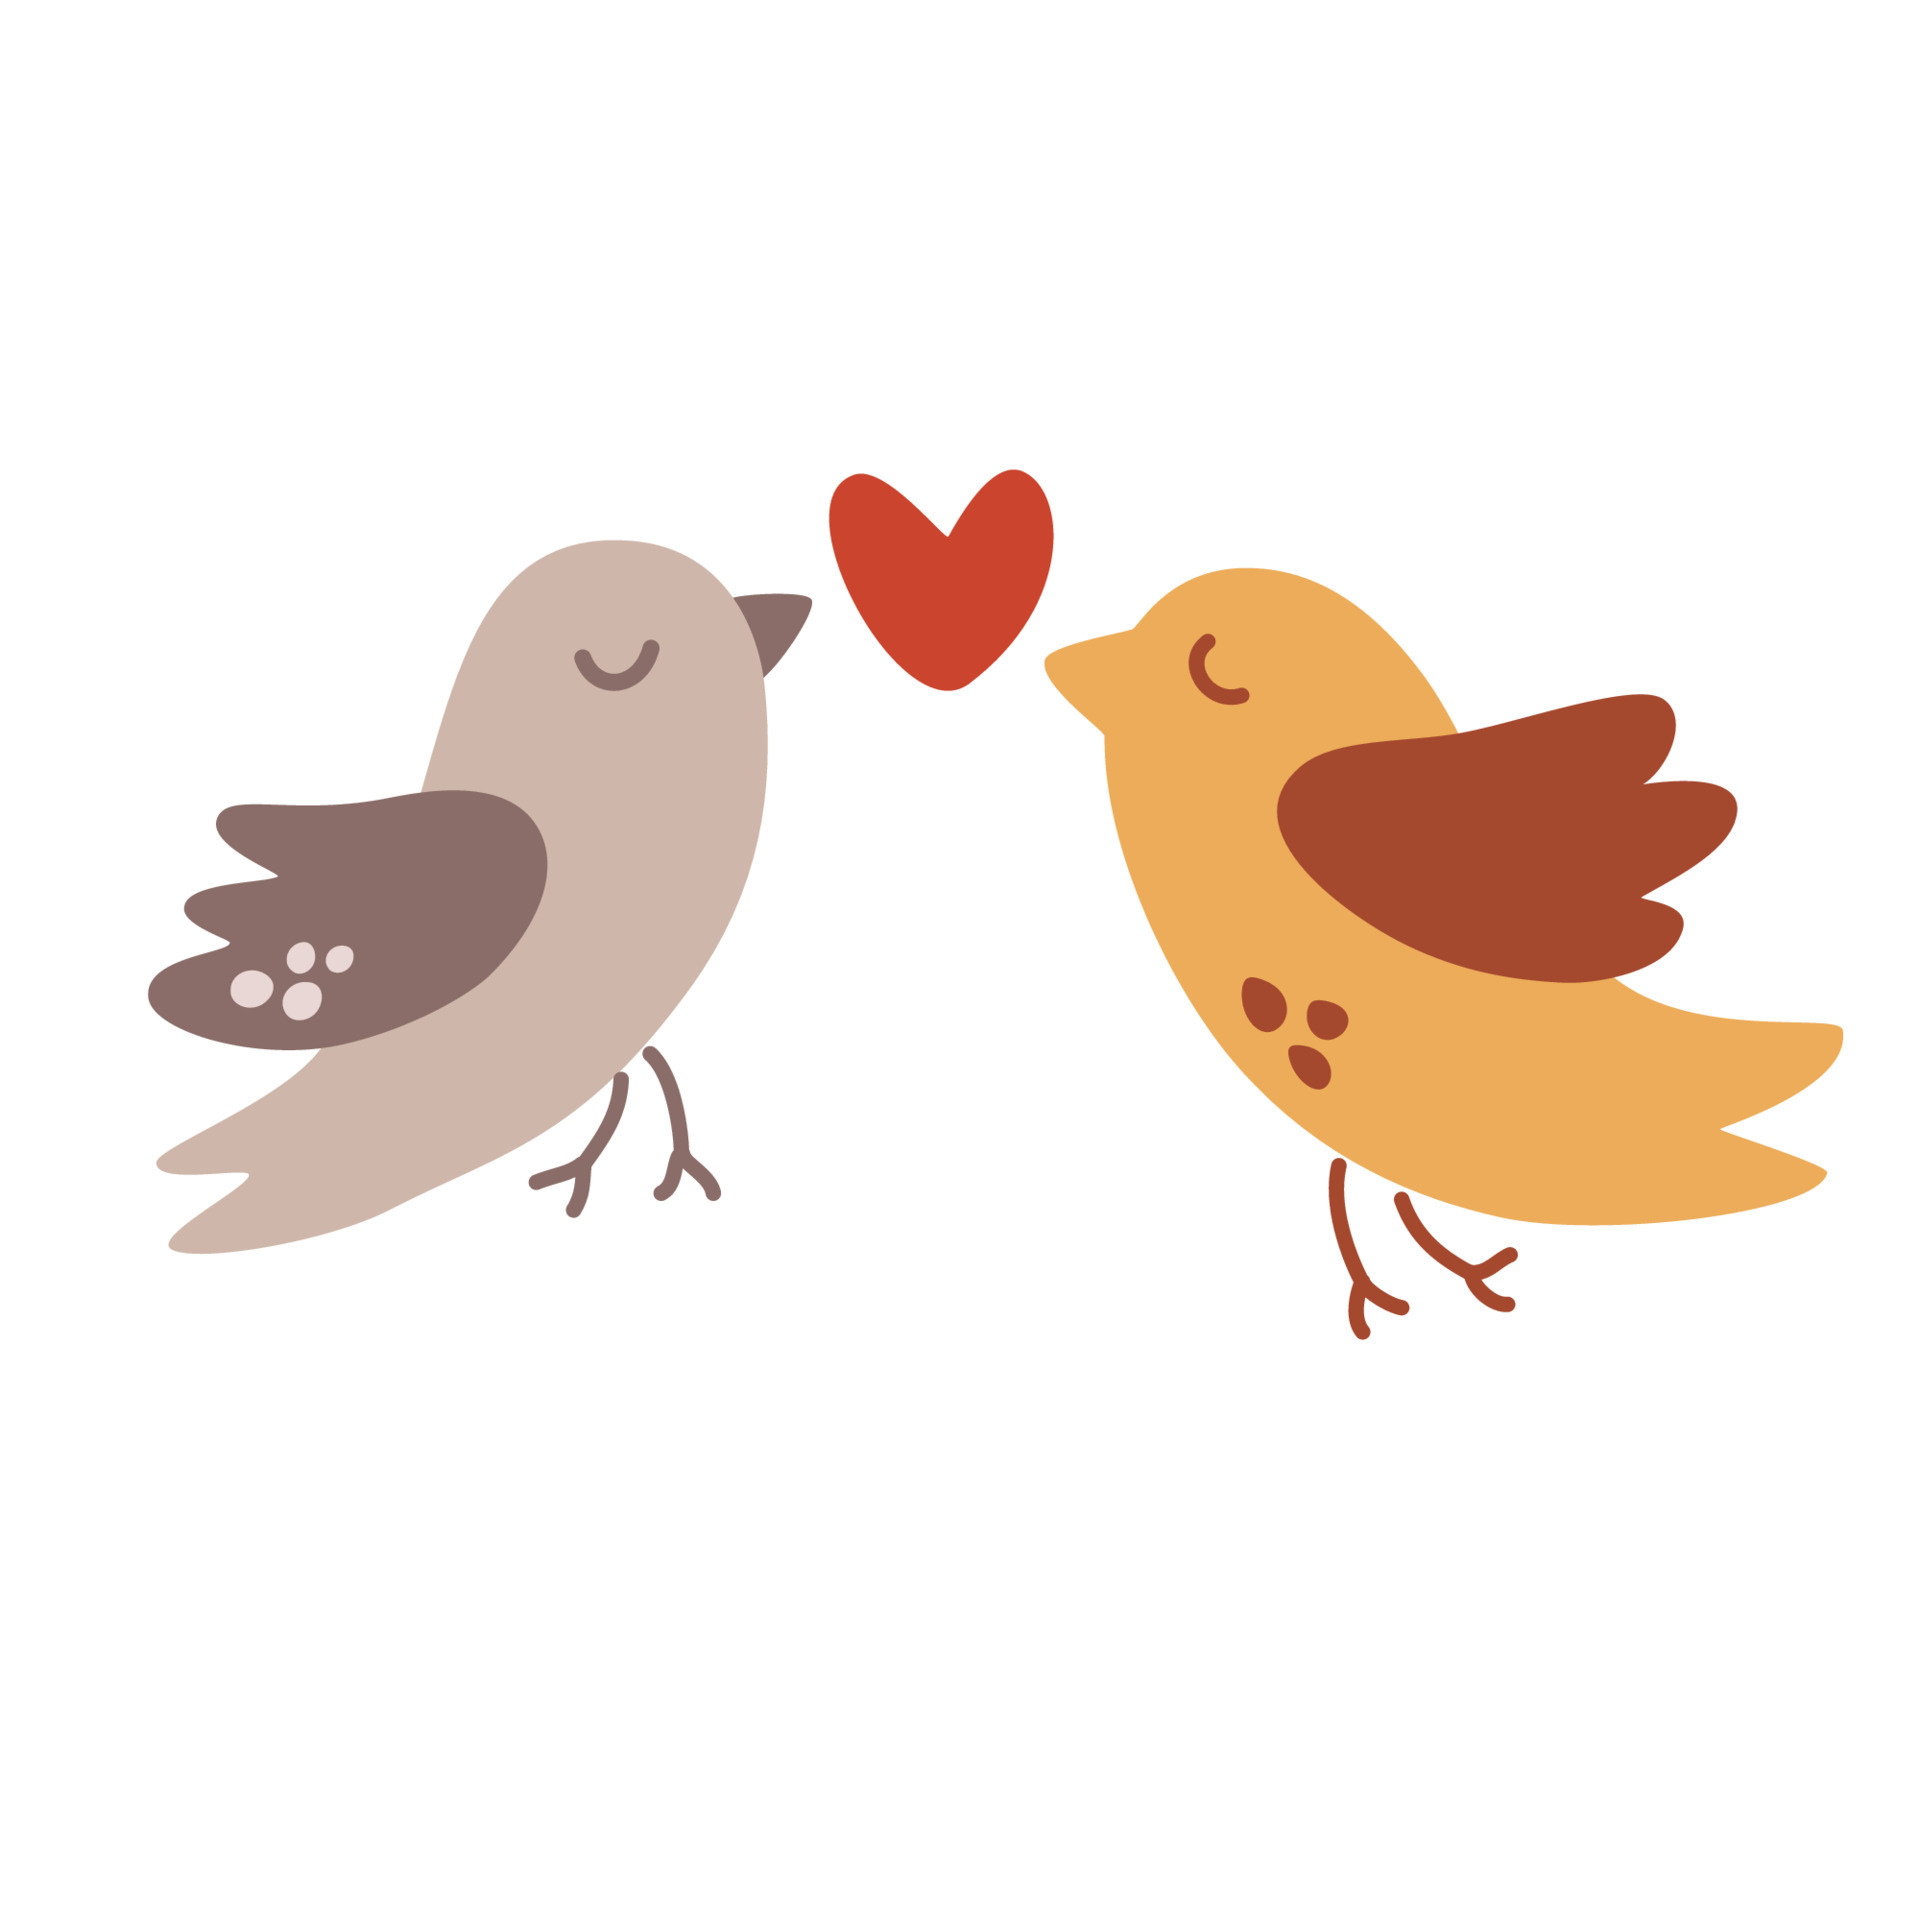 Cartões de amor de Valentim com pássaros bonitos e corações